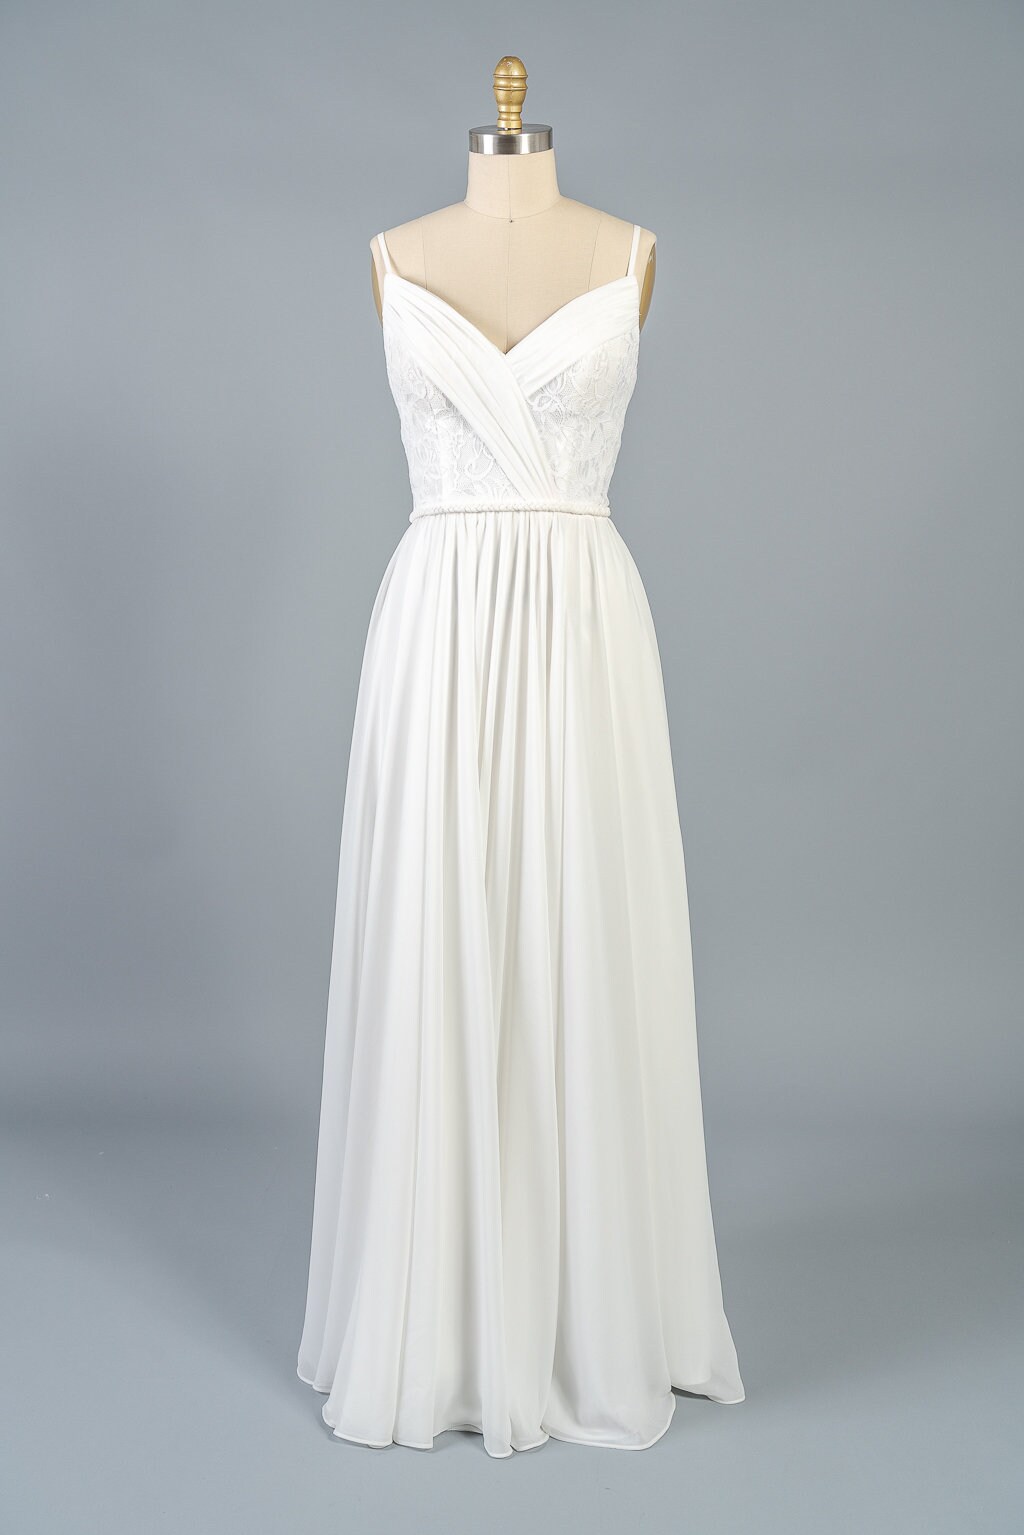 Chiffon/Lace Light Wedding Dress with Braided belt | Etsy